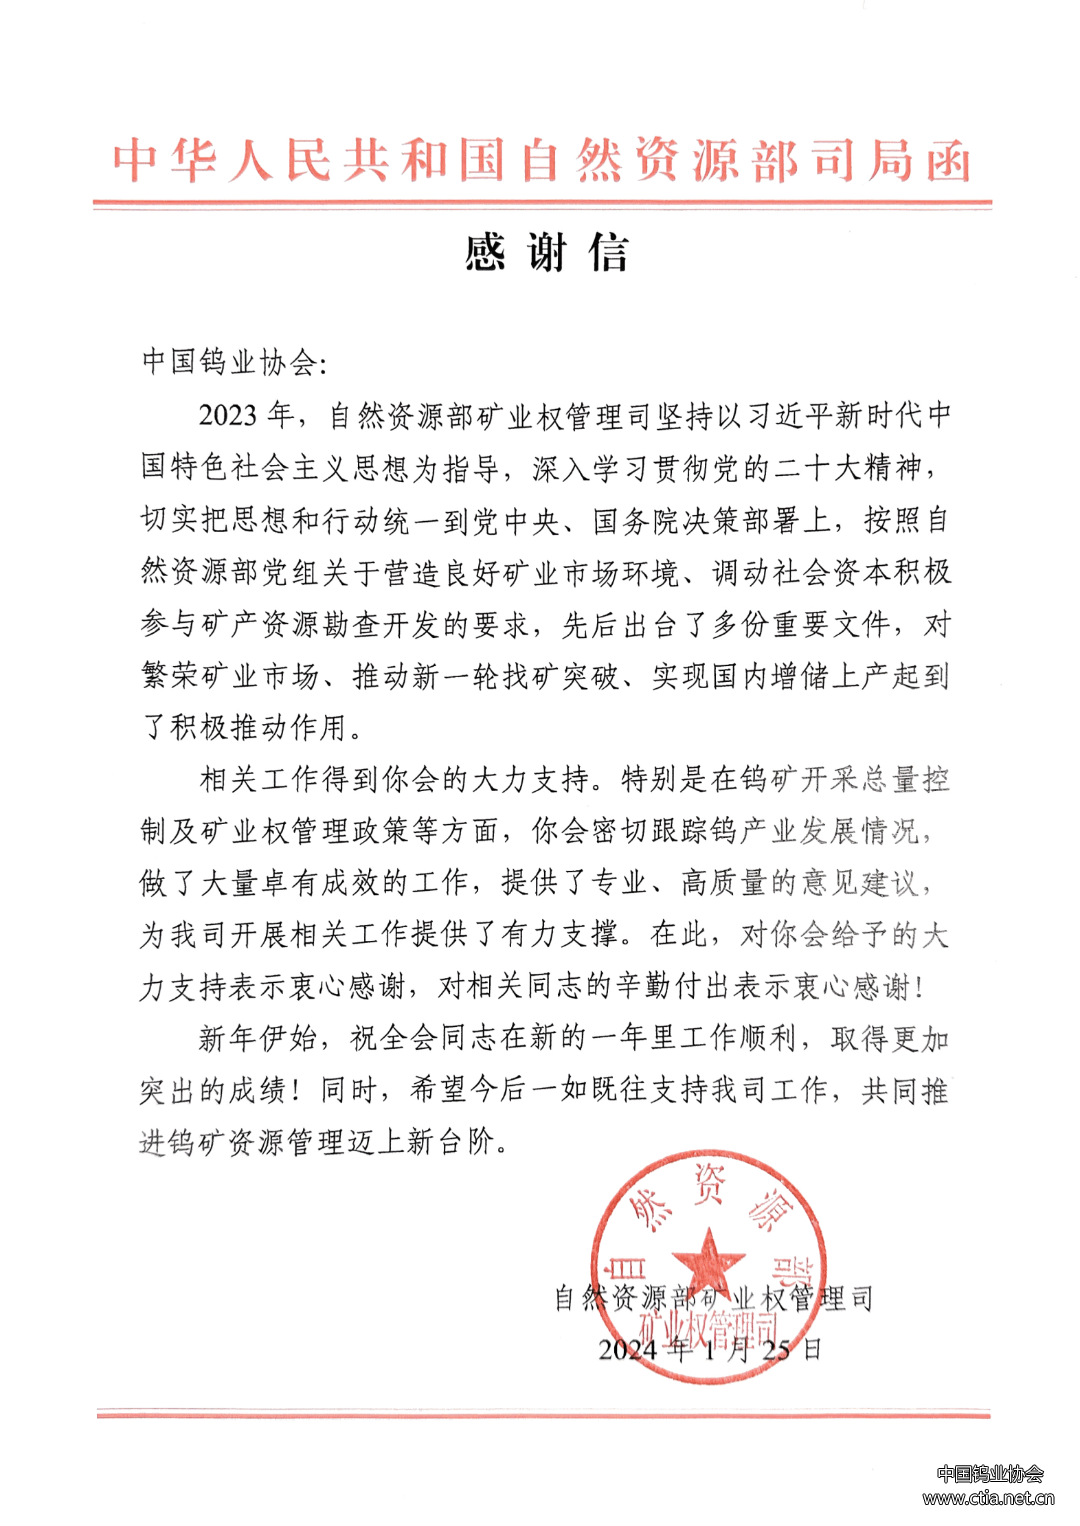 中国钨业协会收到的感谢信图片